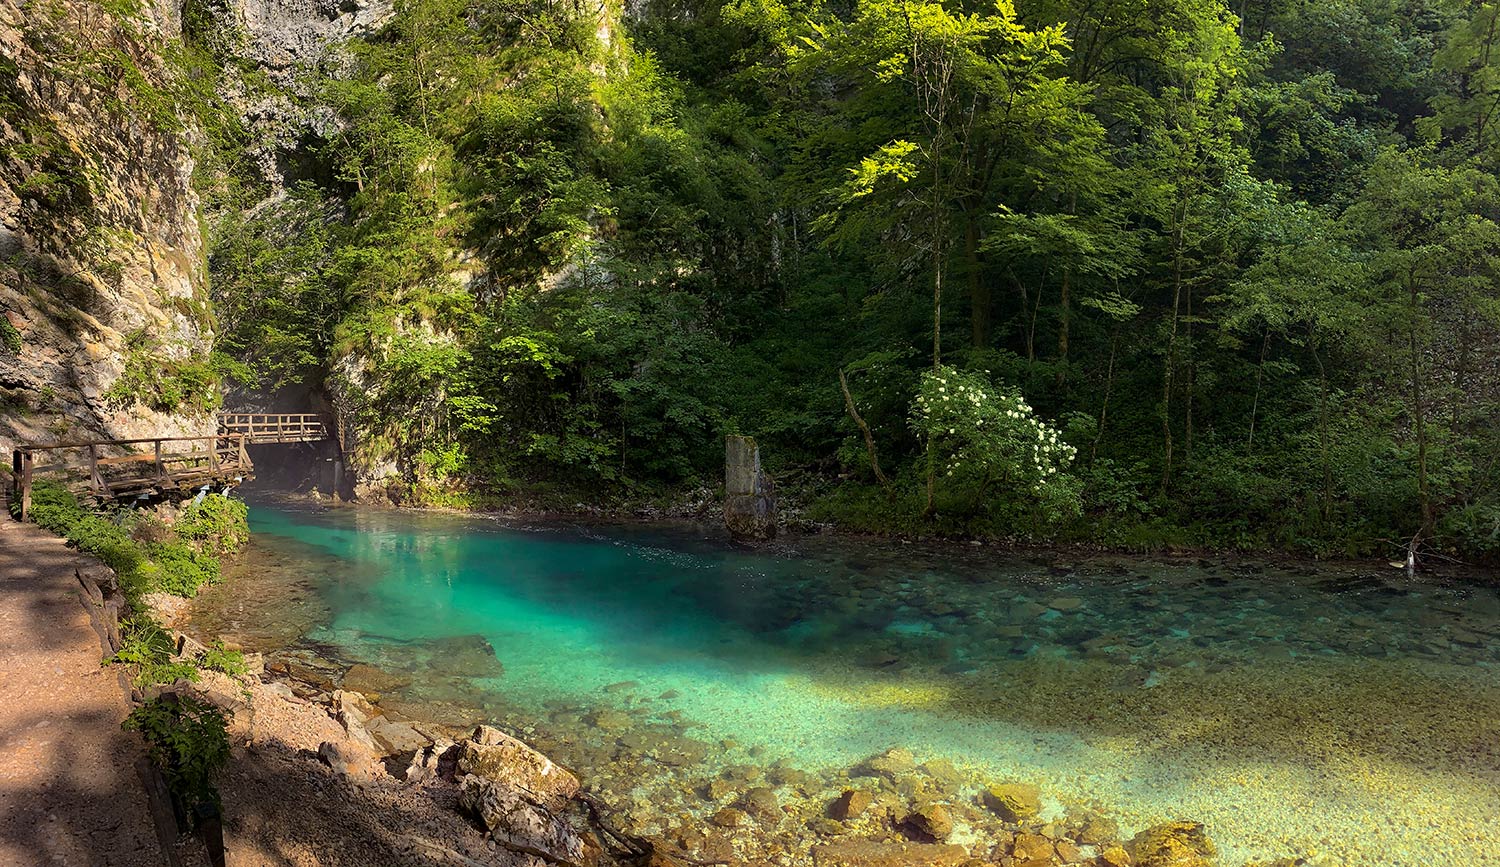 Gorges de Vintgar, Slovénie / Vintgar gorges, Slovenia